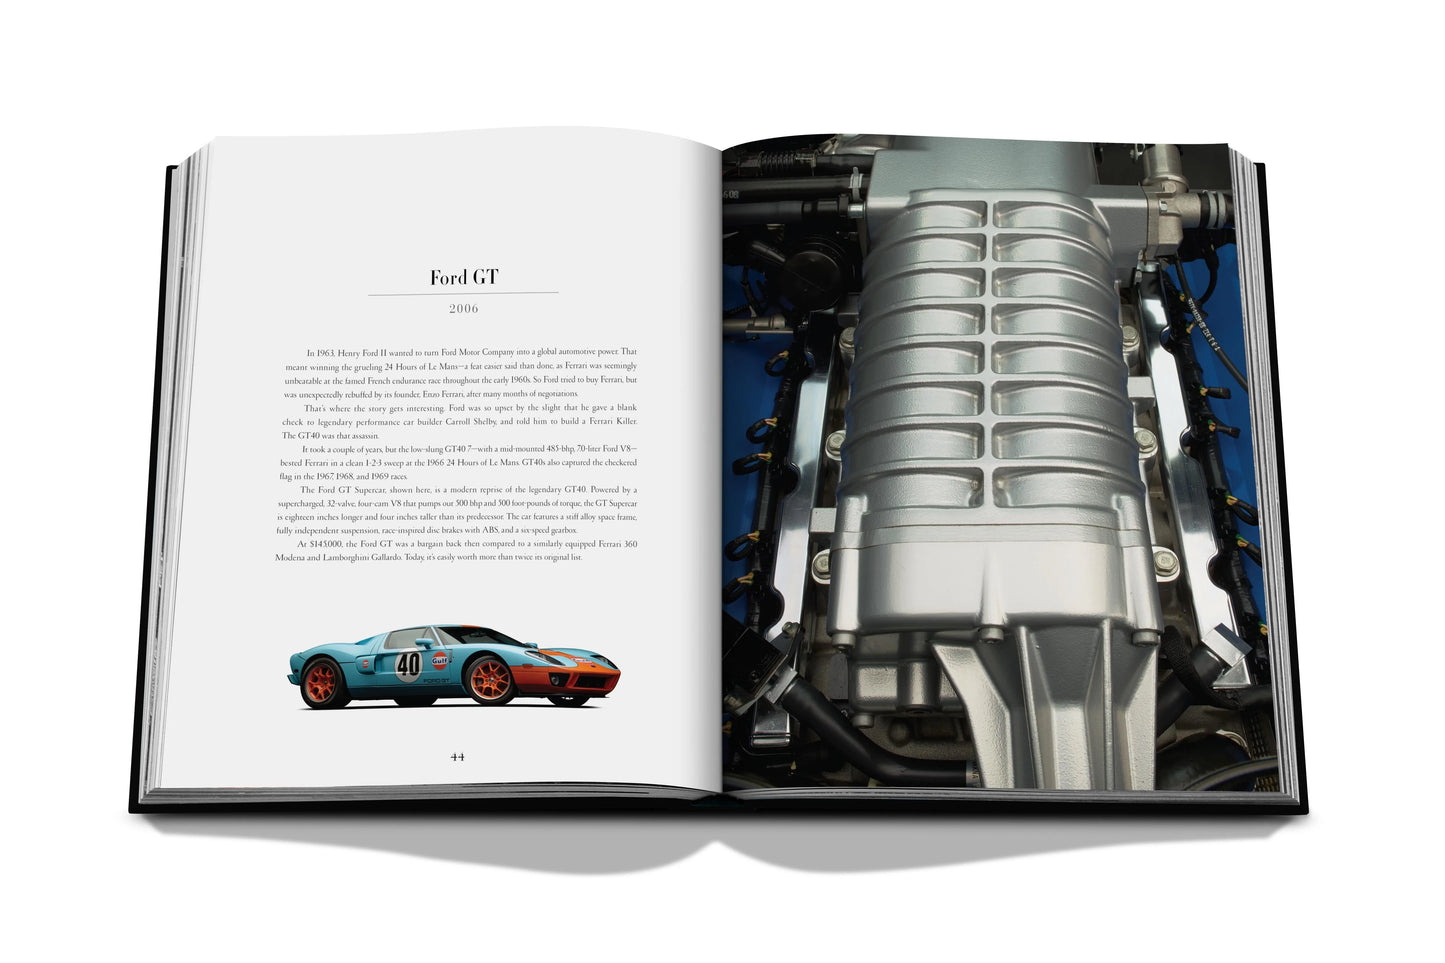 Buch Iconic: Kunst, Design, Werbung und das Automobil